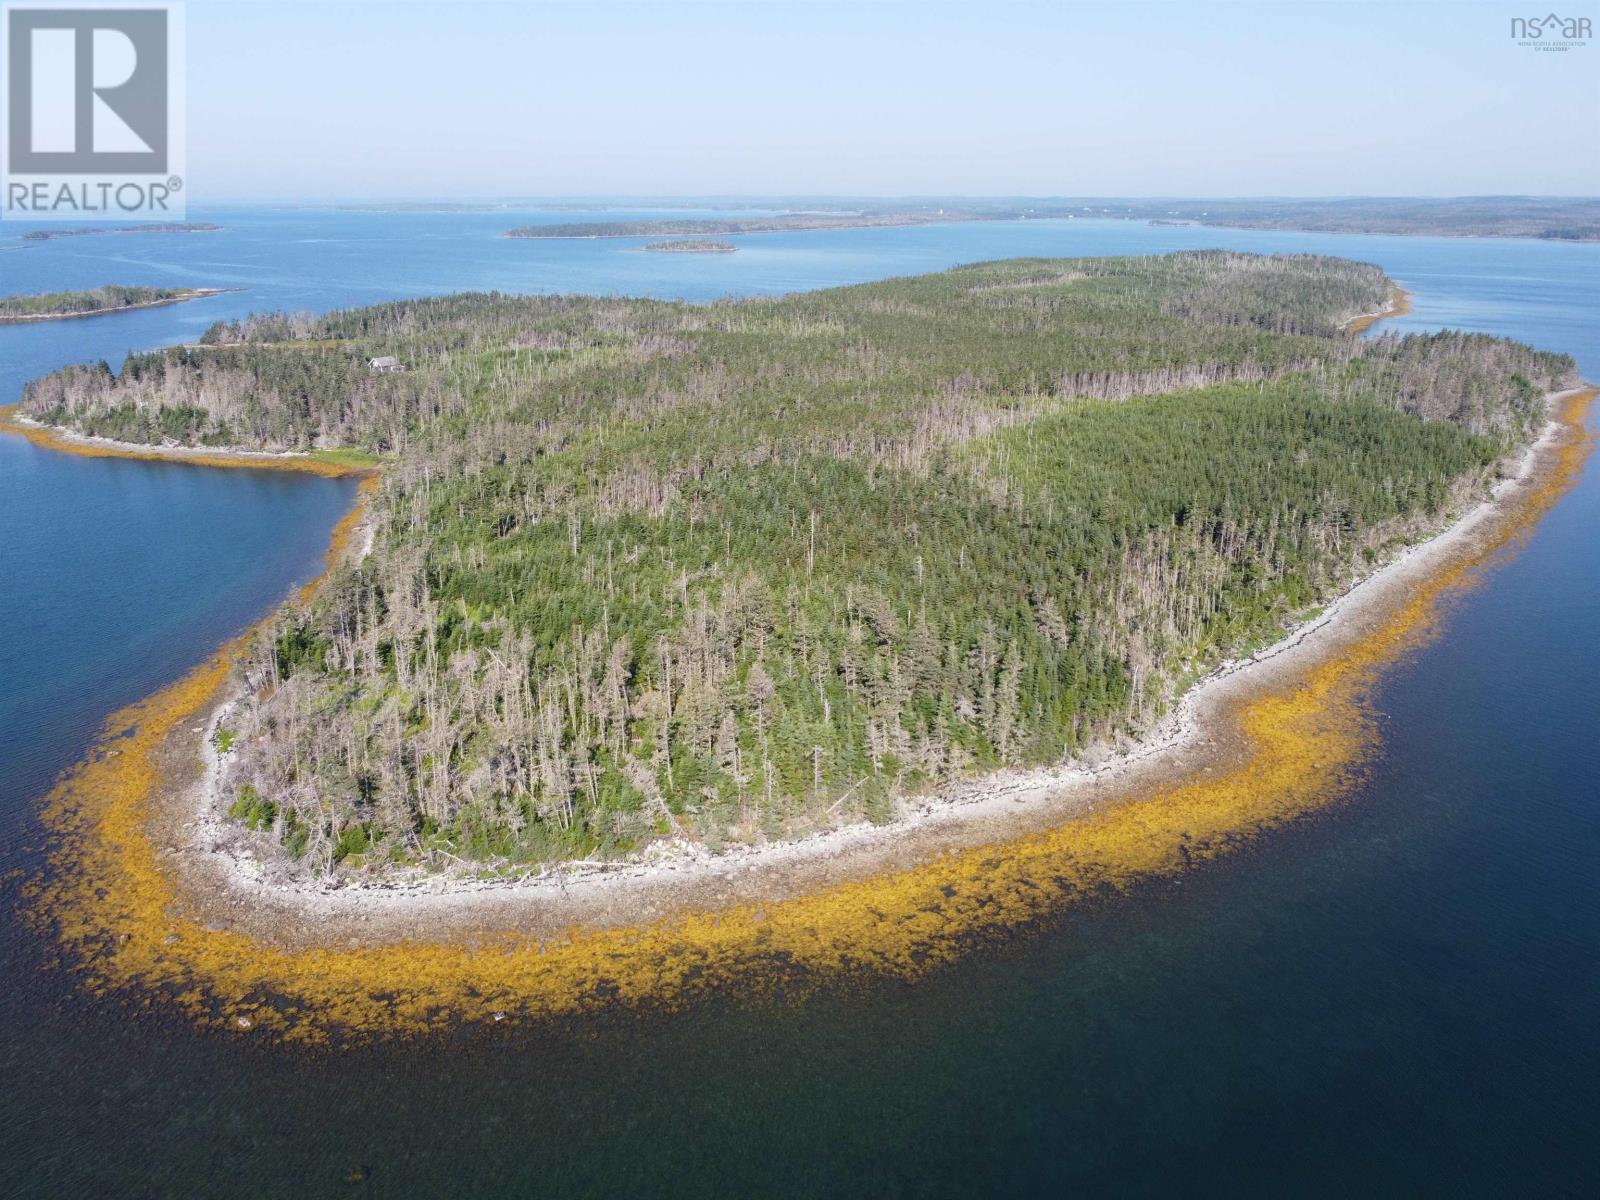 Turners Island located in Marie Joseph, Nova Scotia